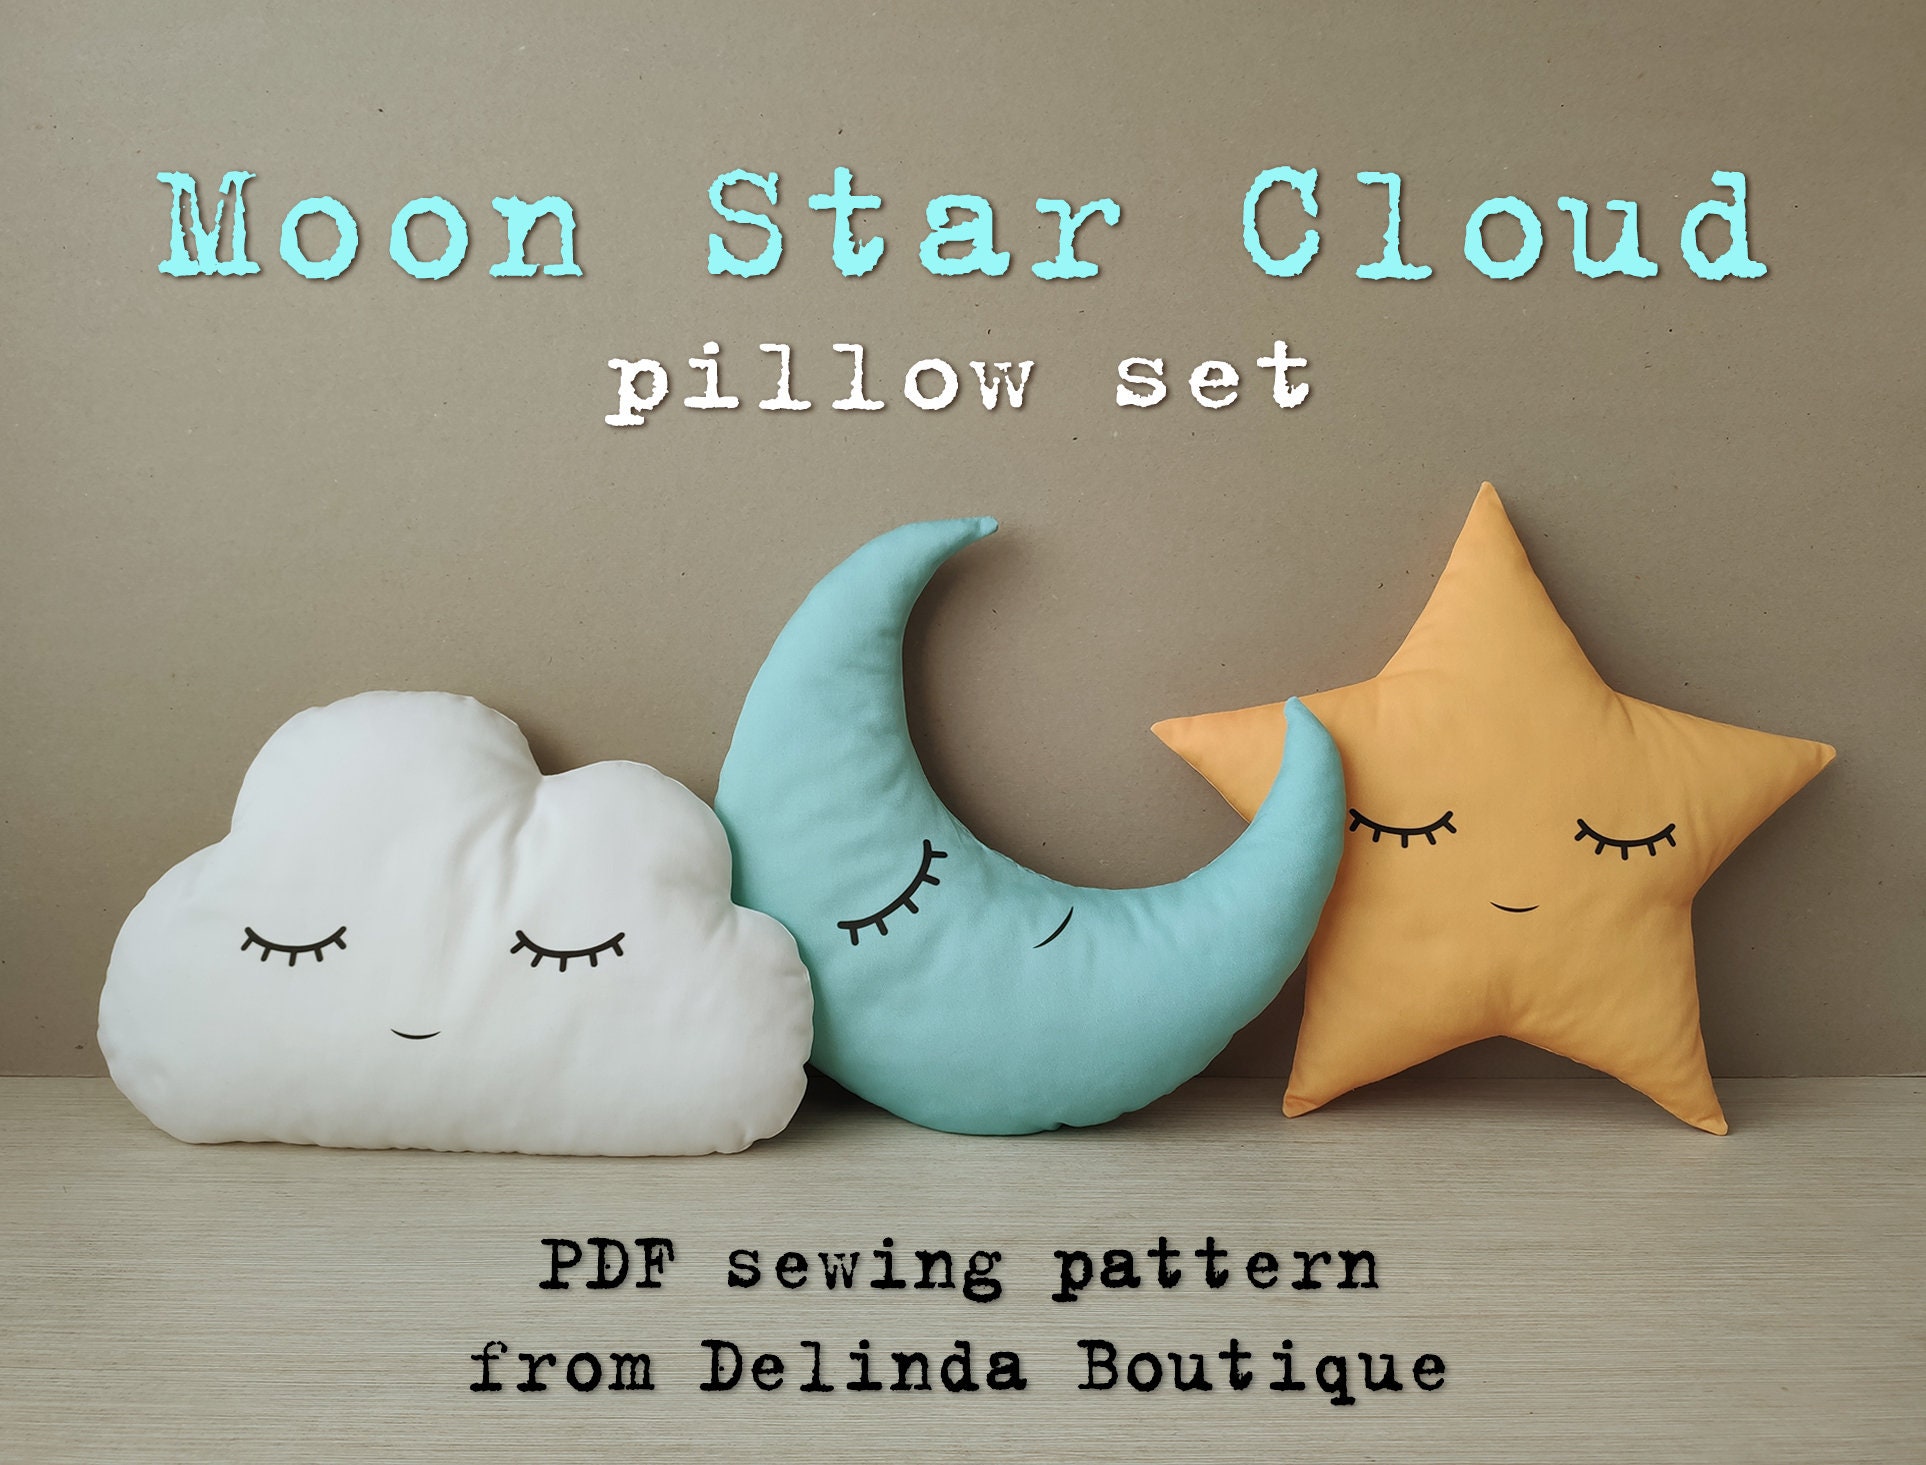 Moon Star Cloud Pillows -  Canada